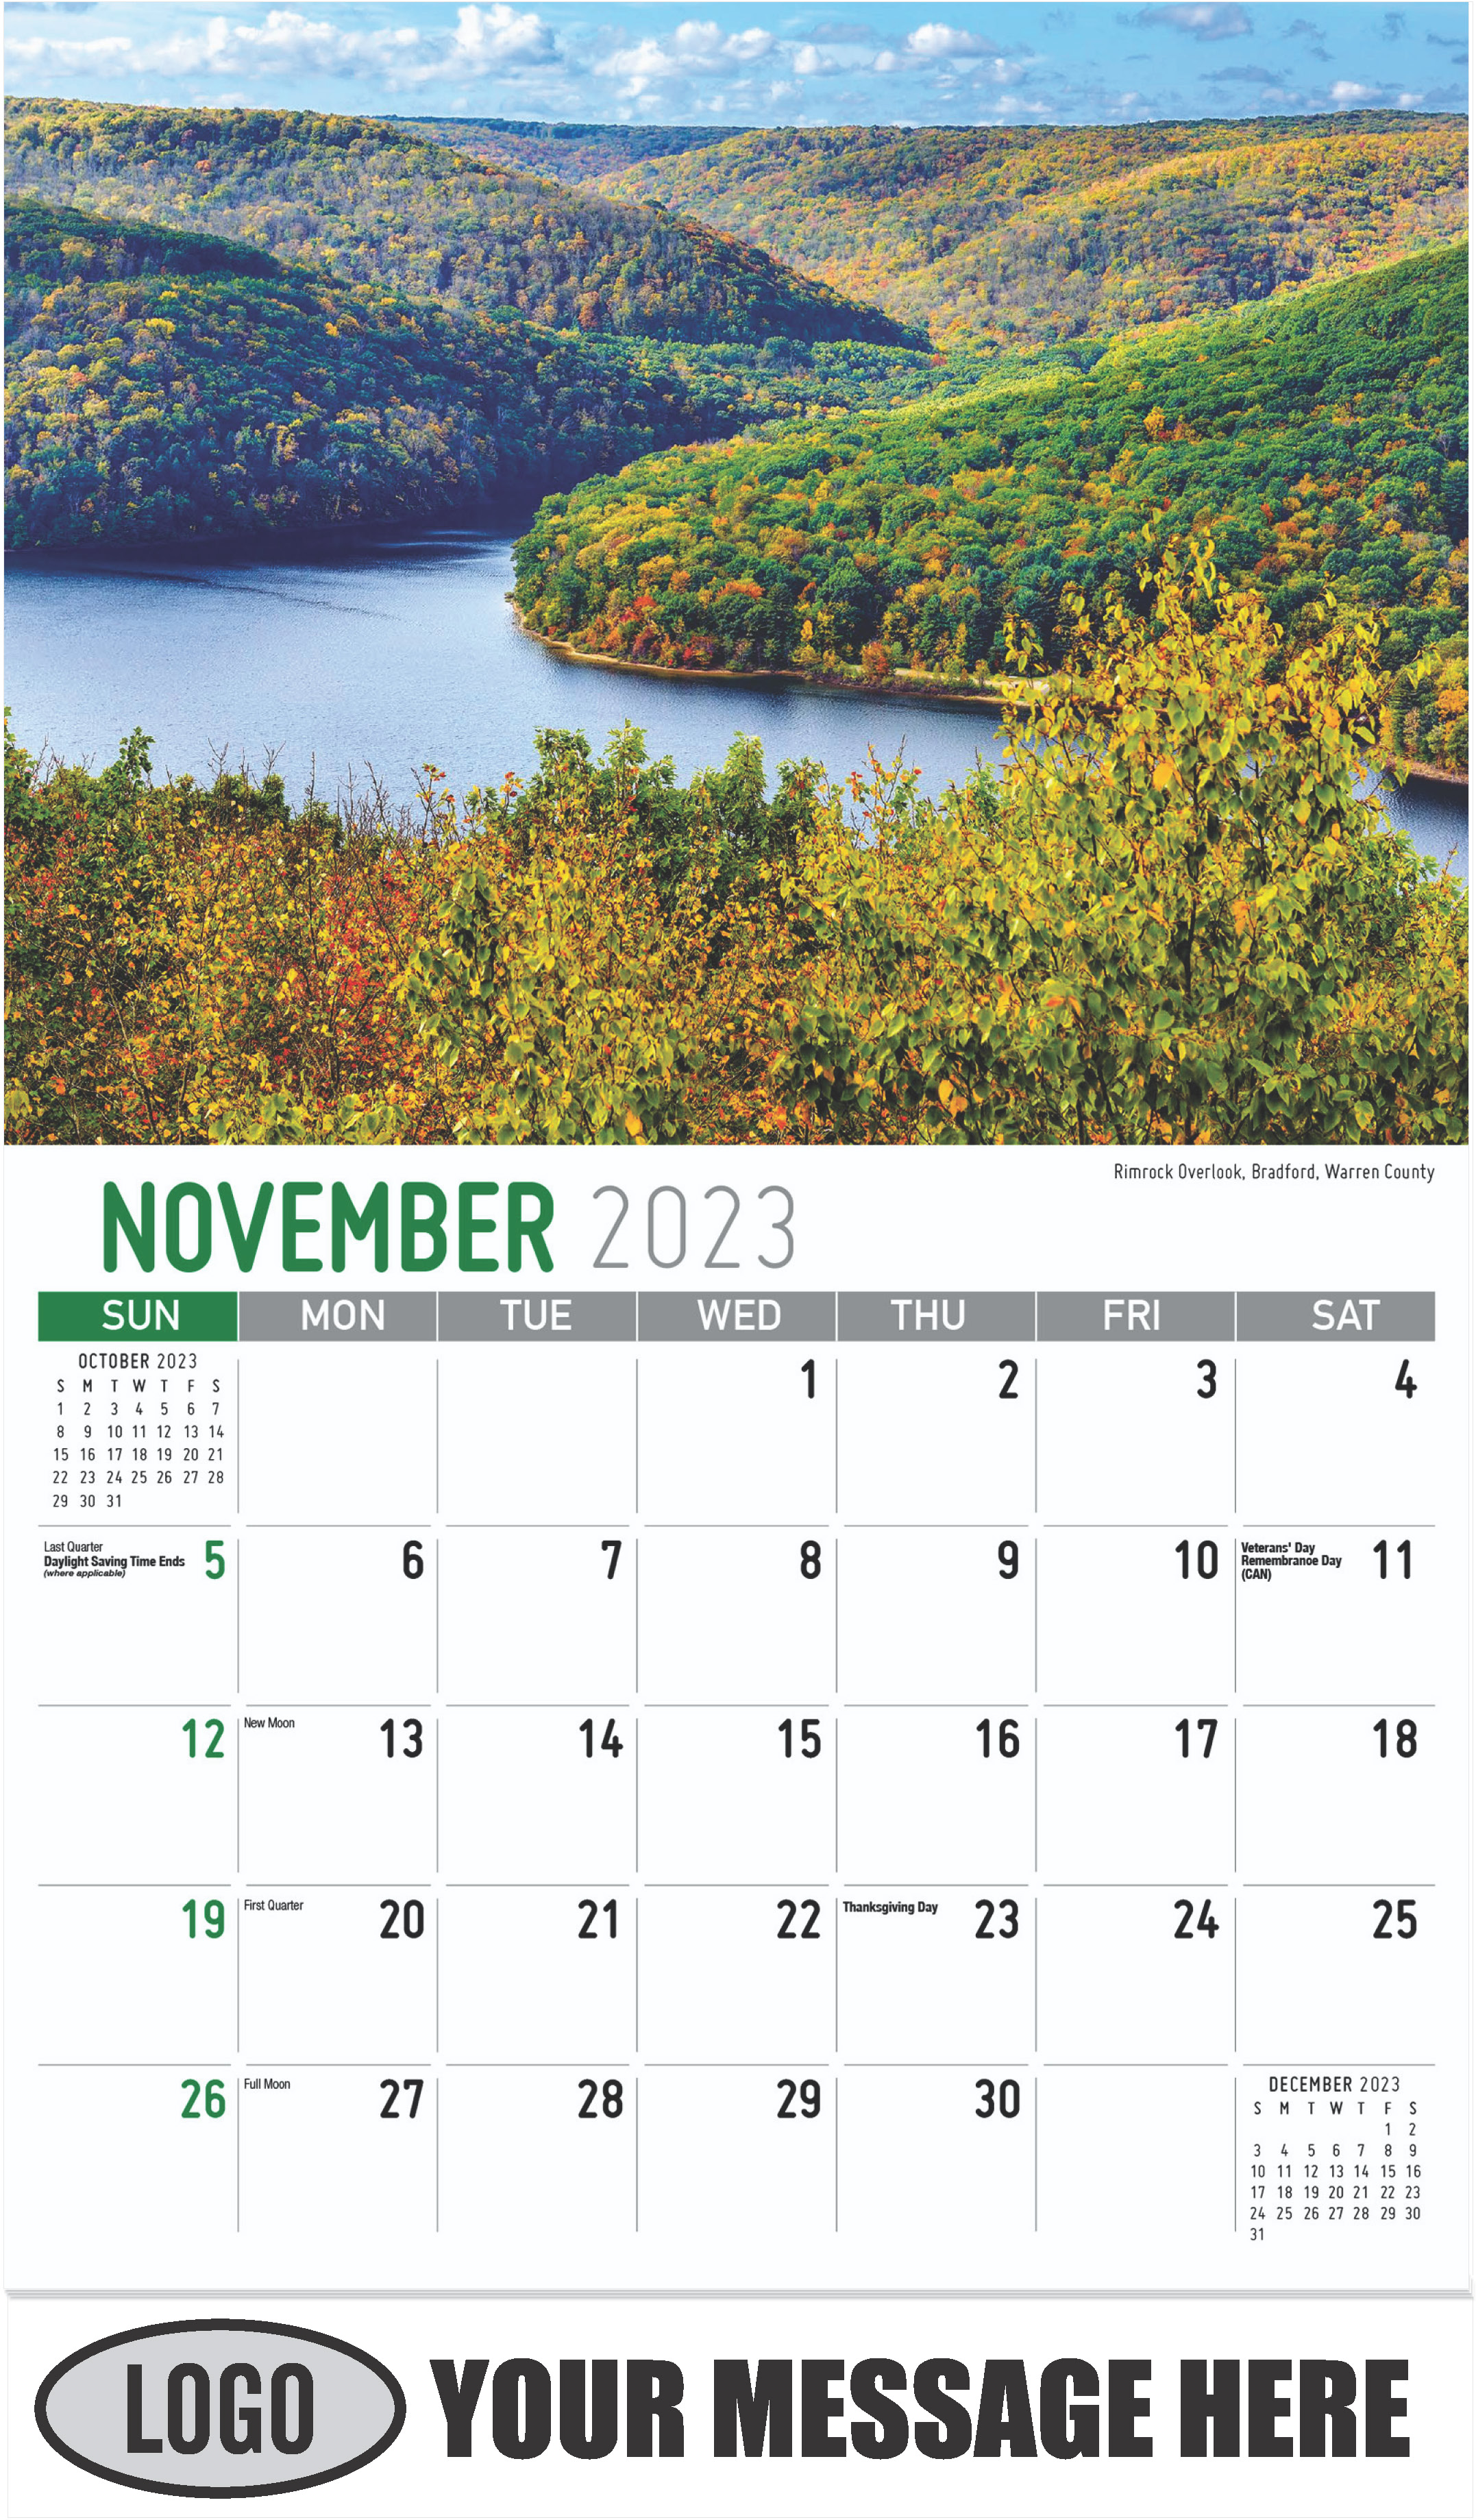 Rimrock Overlook, Bradford, Warren County - November - Scenes of Pennsylvania 2023 Promotional Calendar